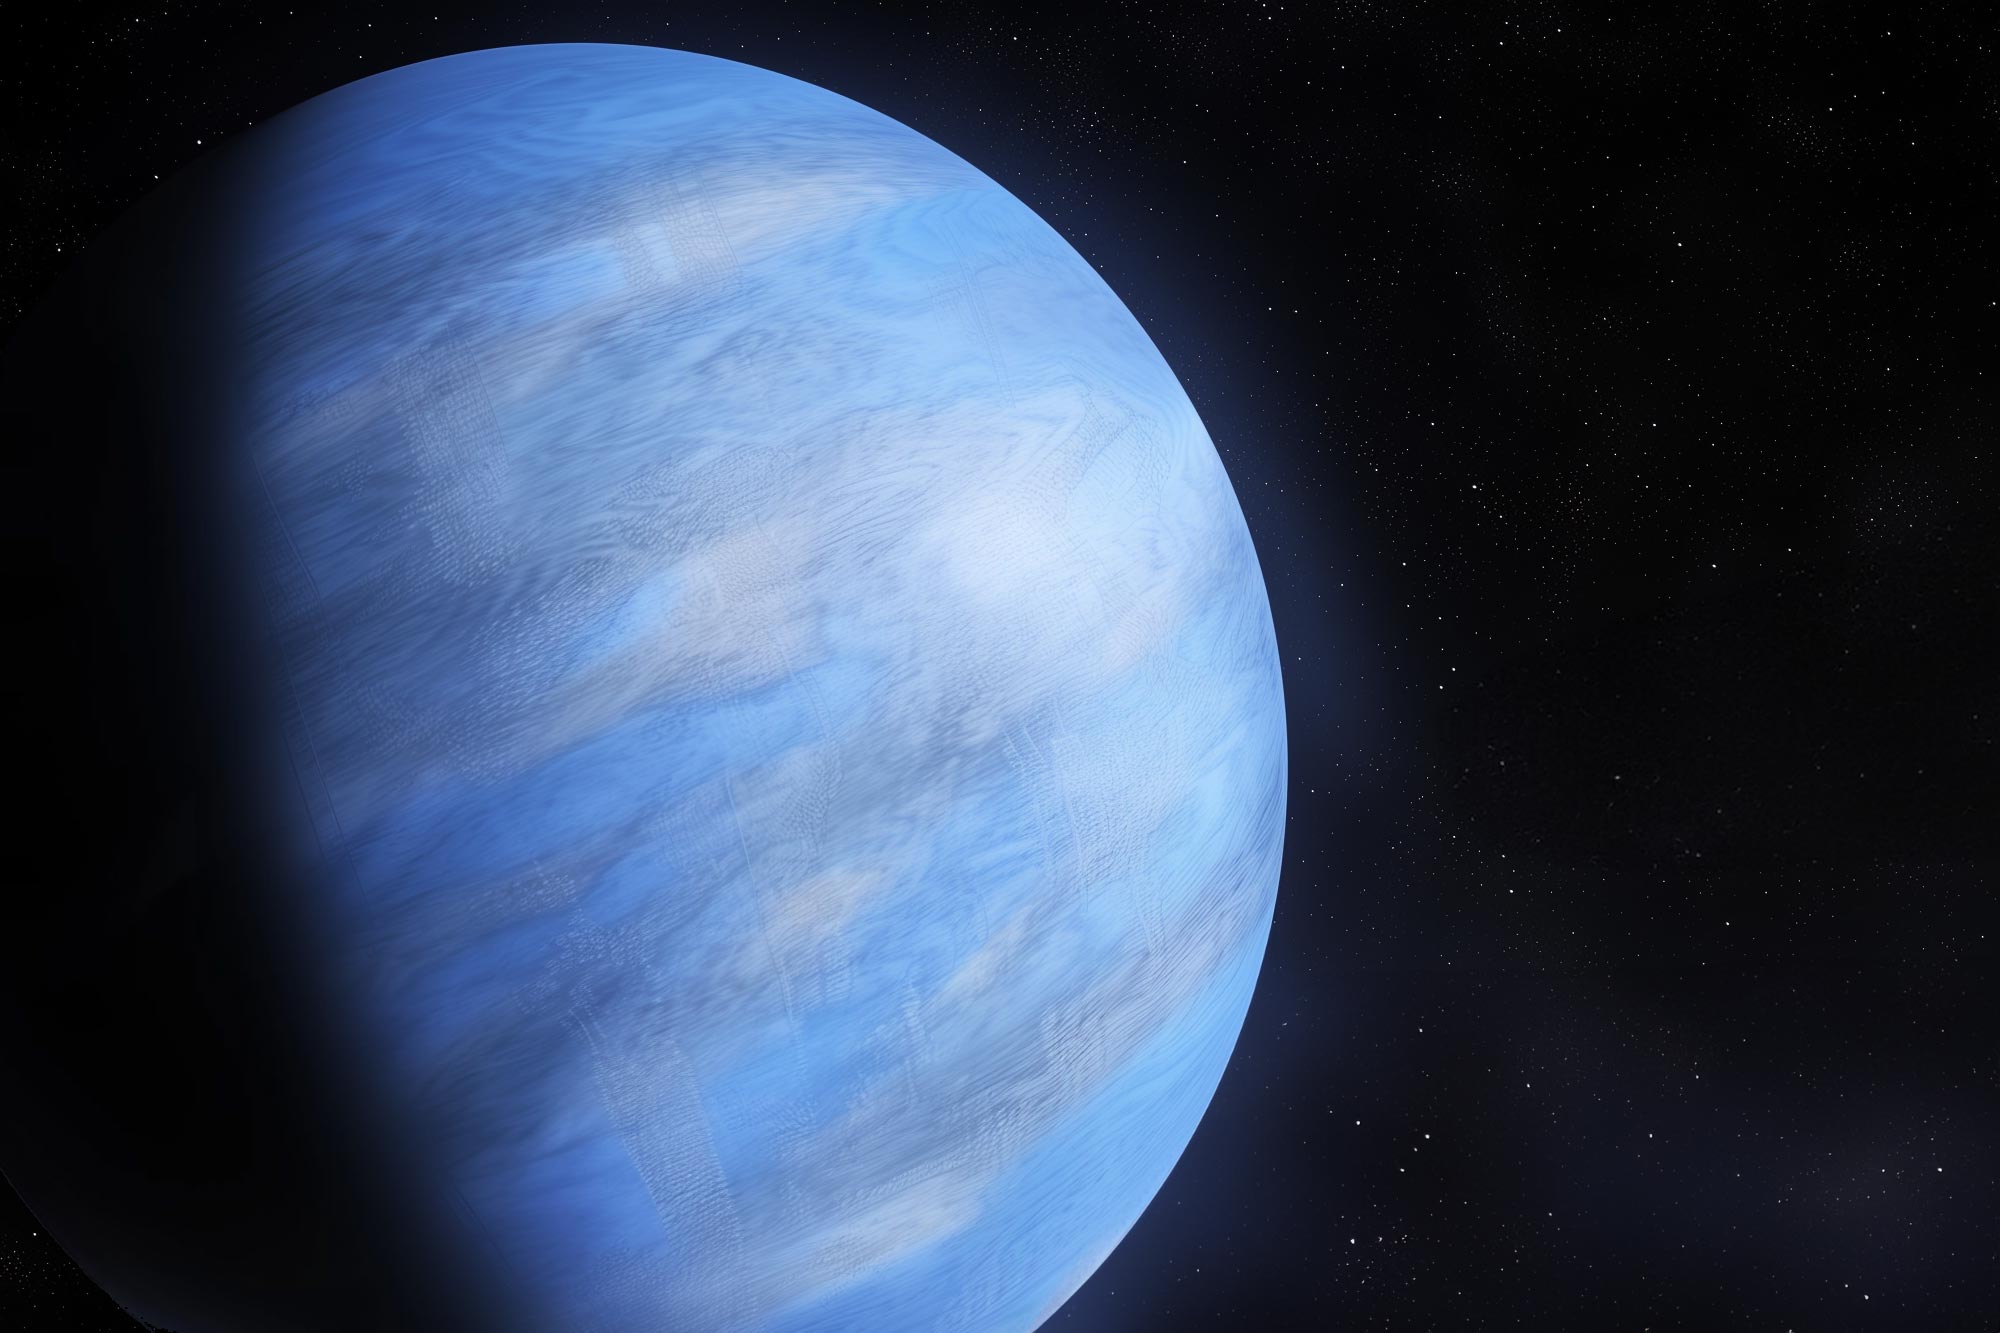 تلسكوب ويب الفضائي يكشف حالة كوكب خارجي منتفخ “مارشميلو ميكروويف”.